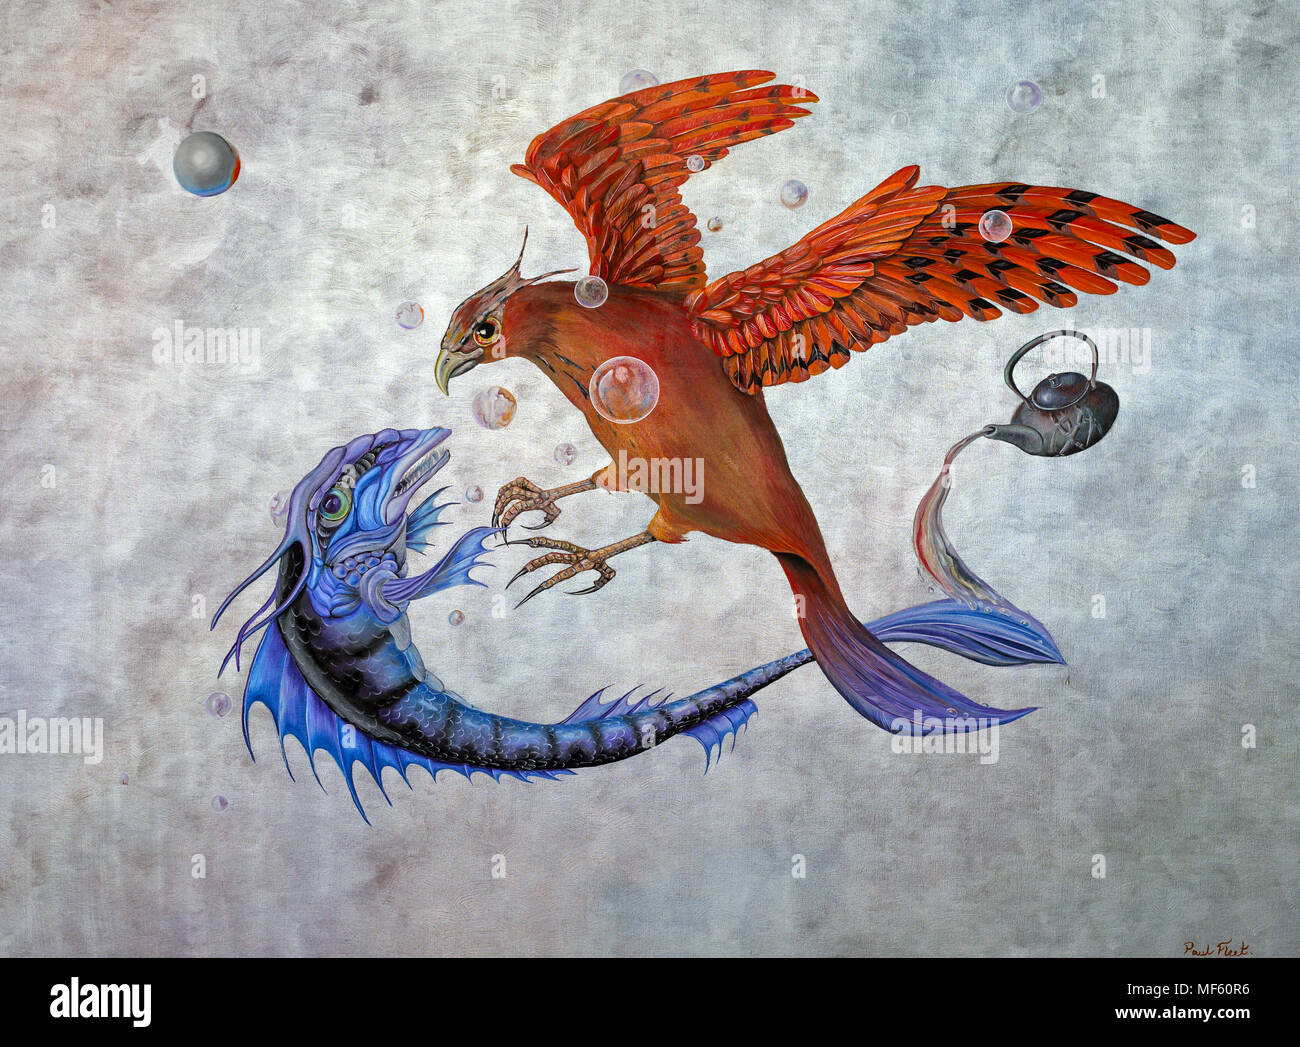 Huile originale sur toile peinture représentant le conflit entre un phoenix et un poisson mythologique dans une bataille céleste Banque D'Images